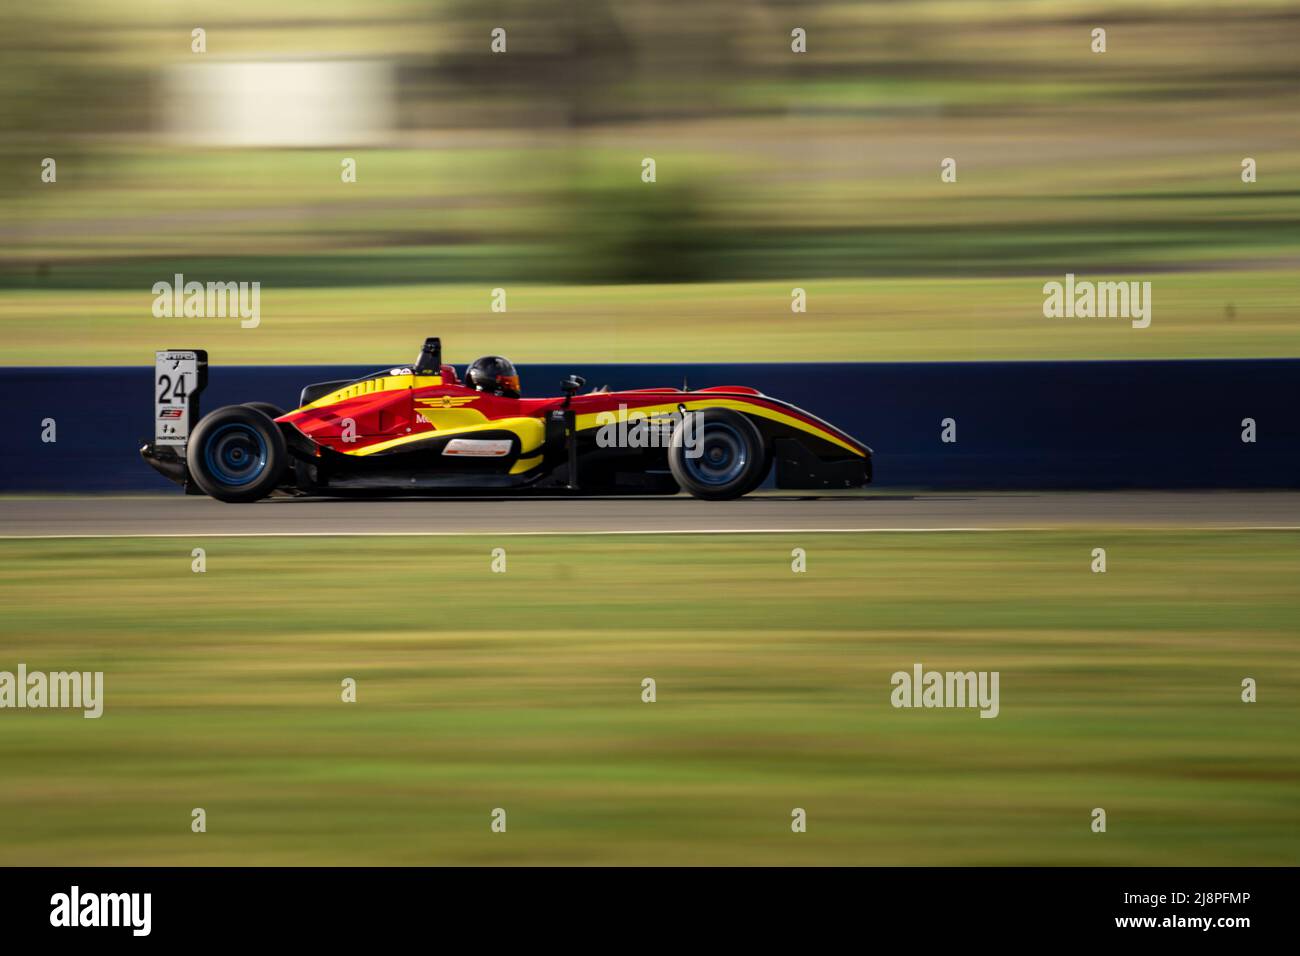 Der gelbe und rote Formel-3-Wagen mit der Nummer 24 Australien wird auf dem Winton Motor Raceway getestet. Stockfoto